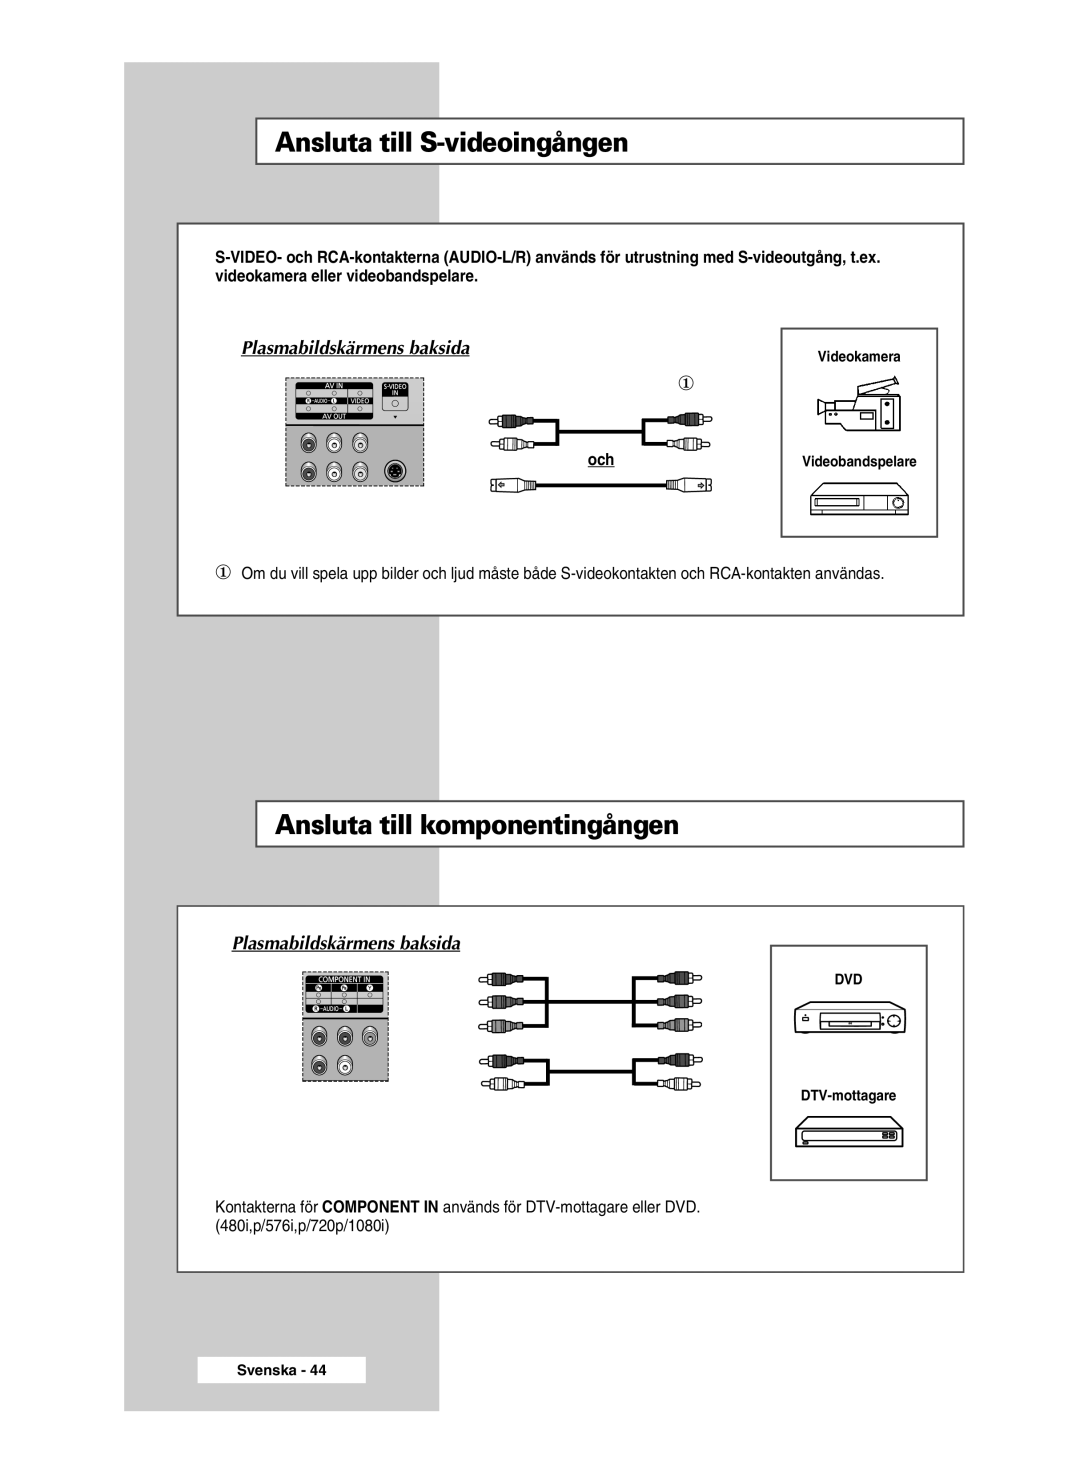 Samsung PPM42M5SSX/EDC manual Ansluta till S-videoingången, Ansluta till komponentingången, Plasmabildskärmens baksida 